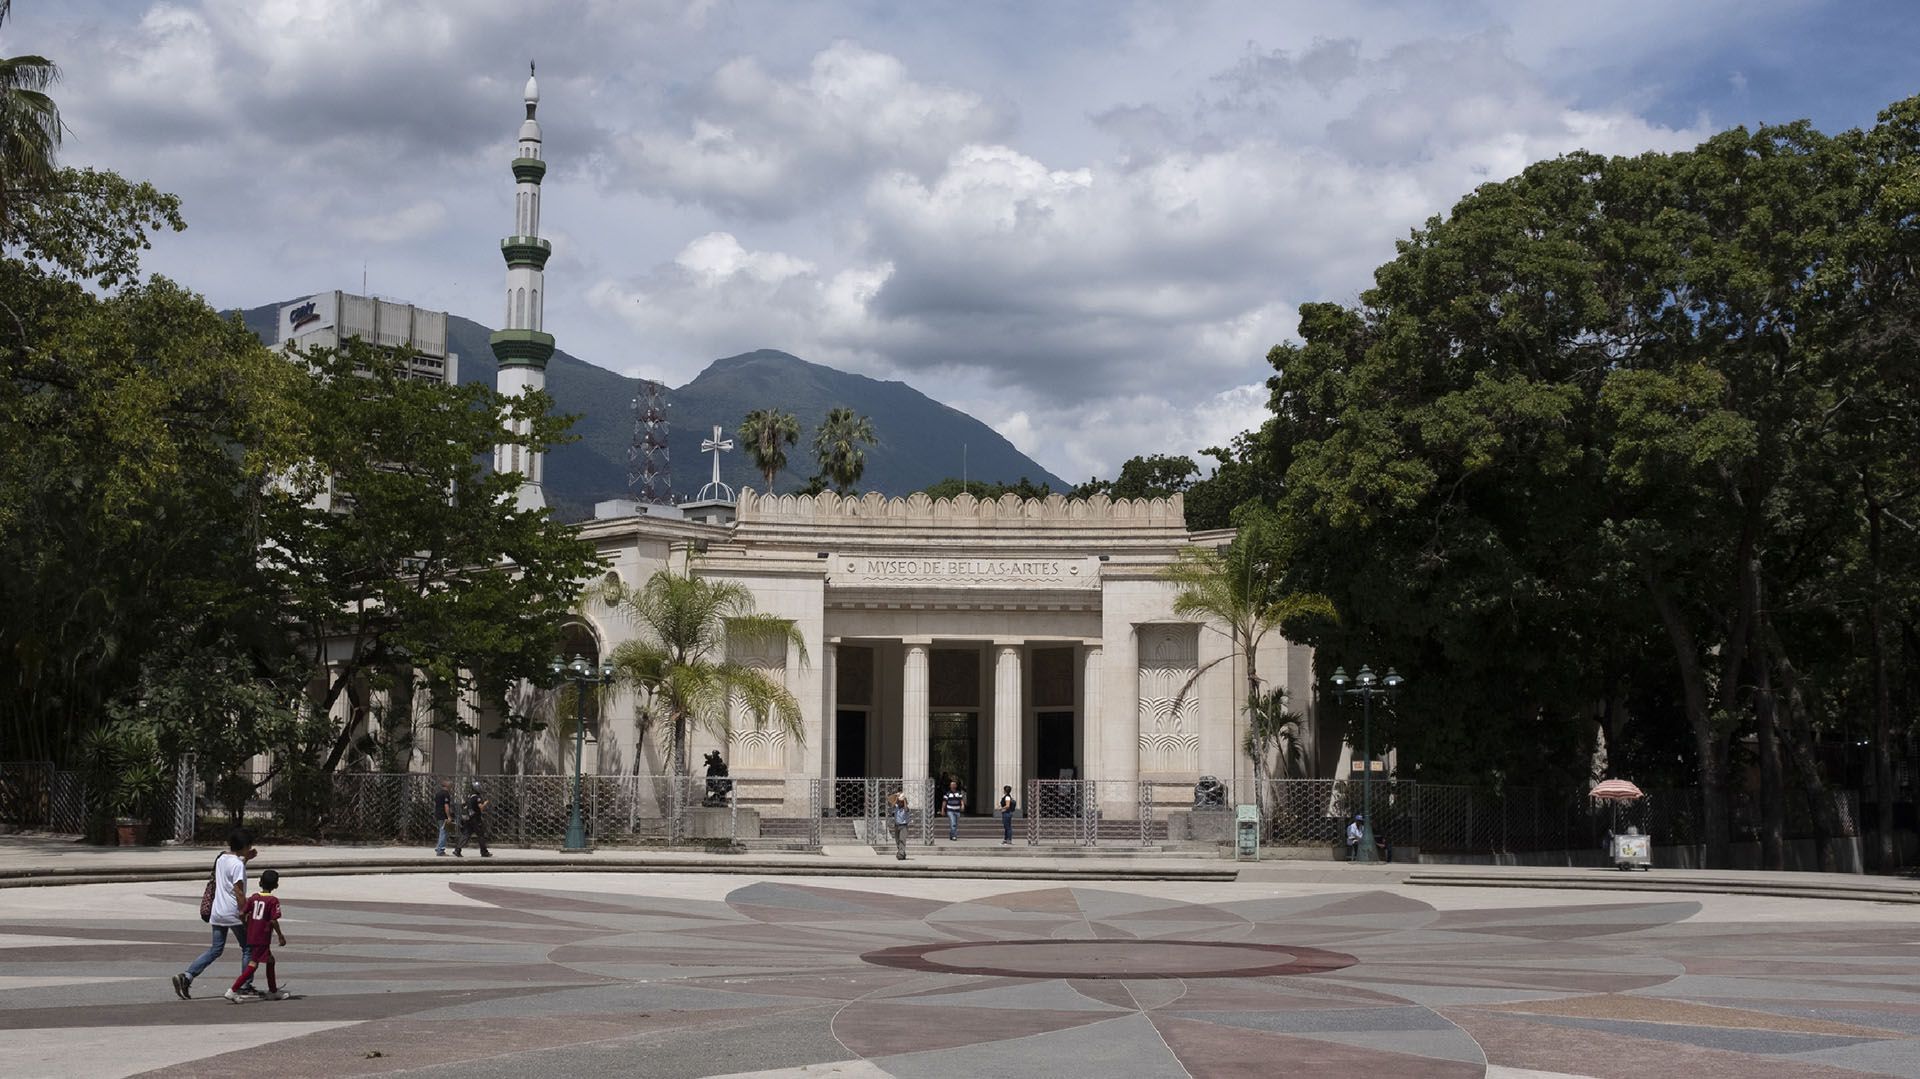 El Museo de Bellas Artes en Caracas. Sólo un tercio de las 18 galerías del museo están abiertas al público; el resto han permanecido cerradas por meses por renovaciones, aunque no se ve ninguna remodelación en curso (AP Foto/Andrea Hernández Briceño)